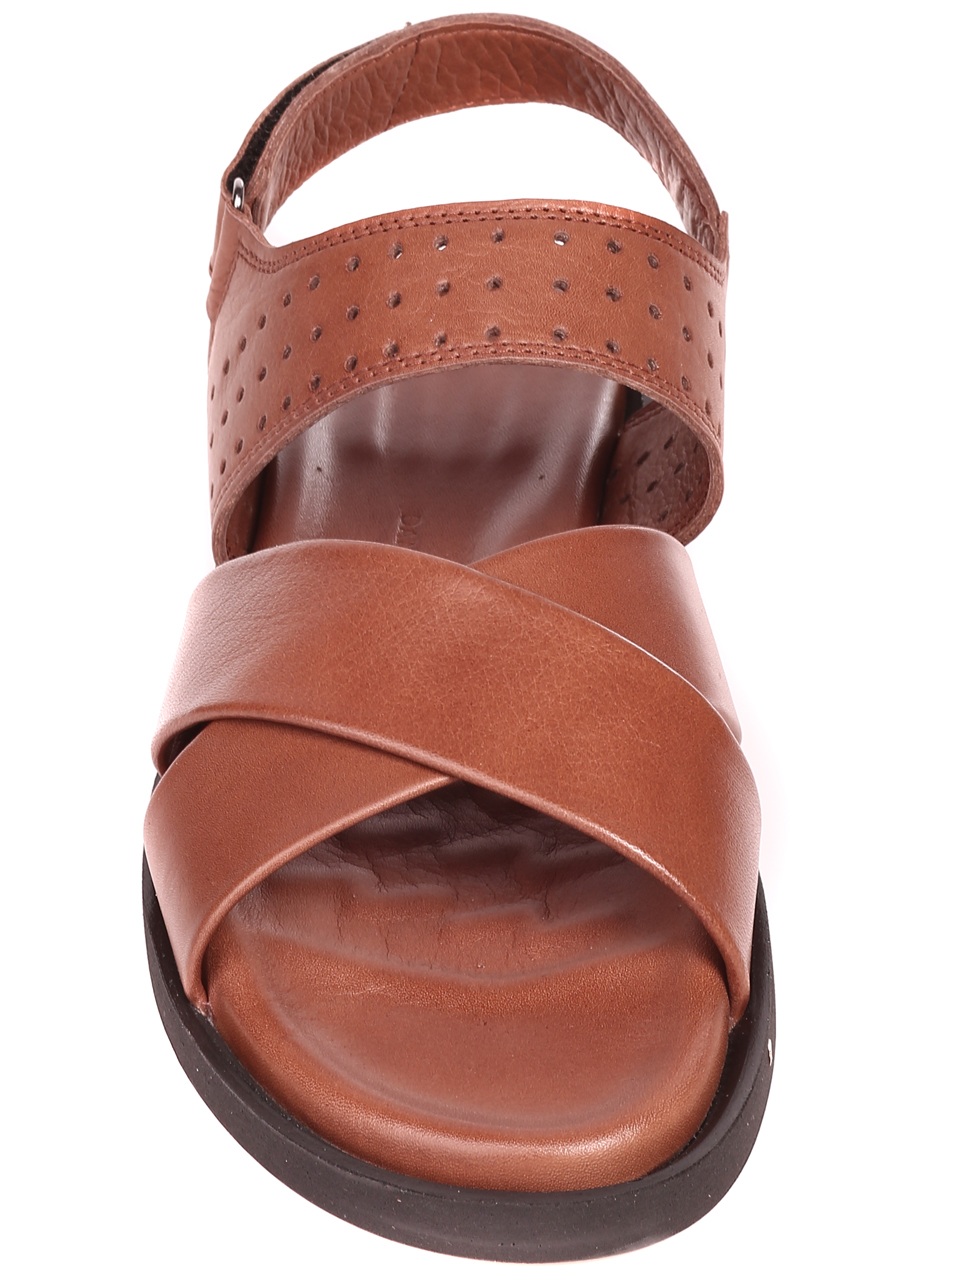 Ежедневни мъжки сандали от естествена кожа в кафяво 8AT-23321 lt.brown